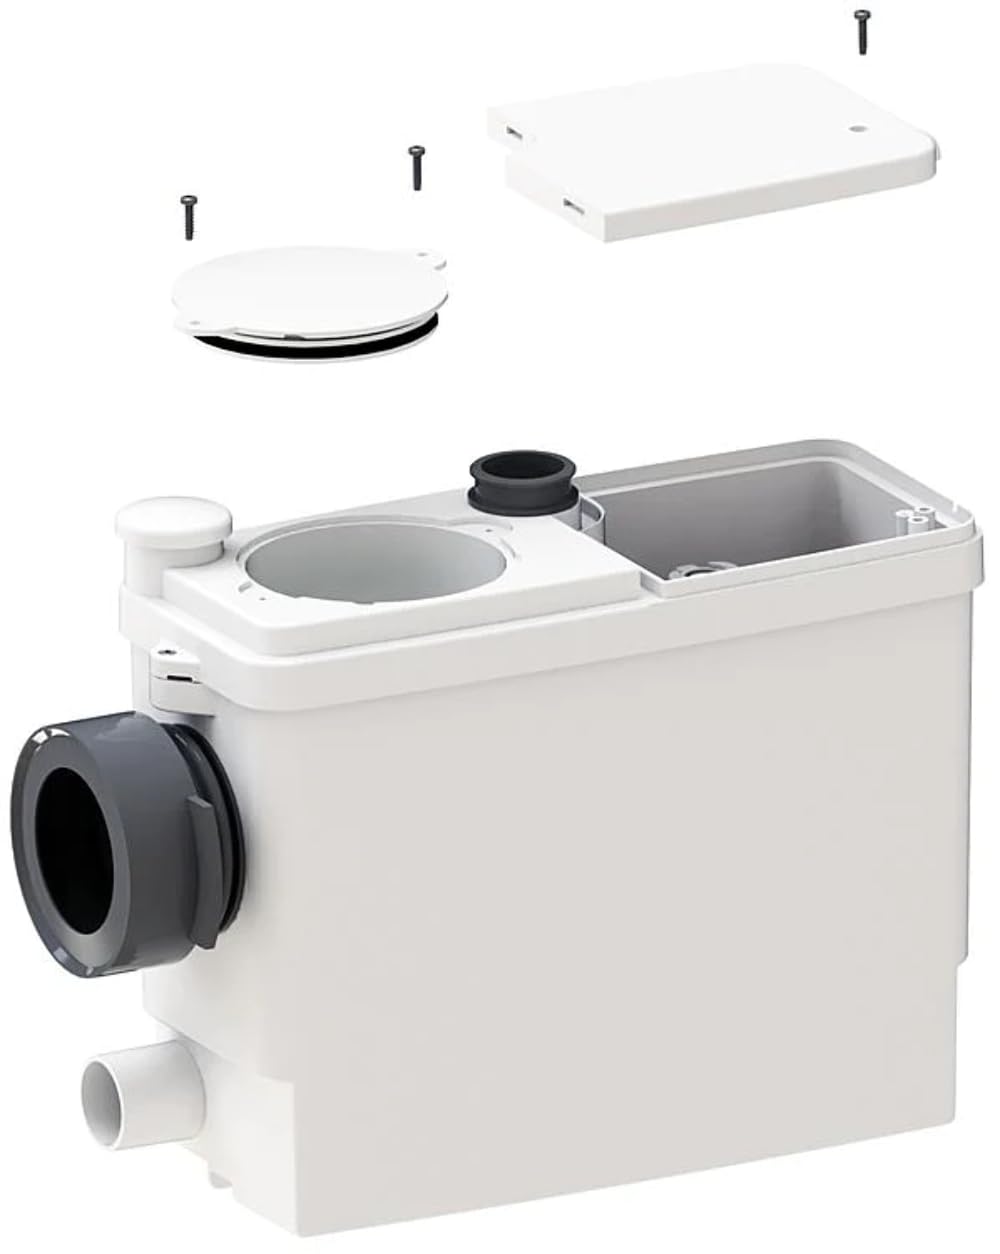 SFA WC Hebeanlage Sanipack Pro Up, kompakte Abwasser-Pumpe für alle gängigen Vorwandsysteme mit Silence-Technologie, 0017UP